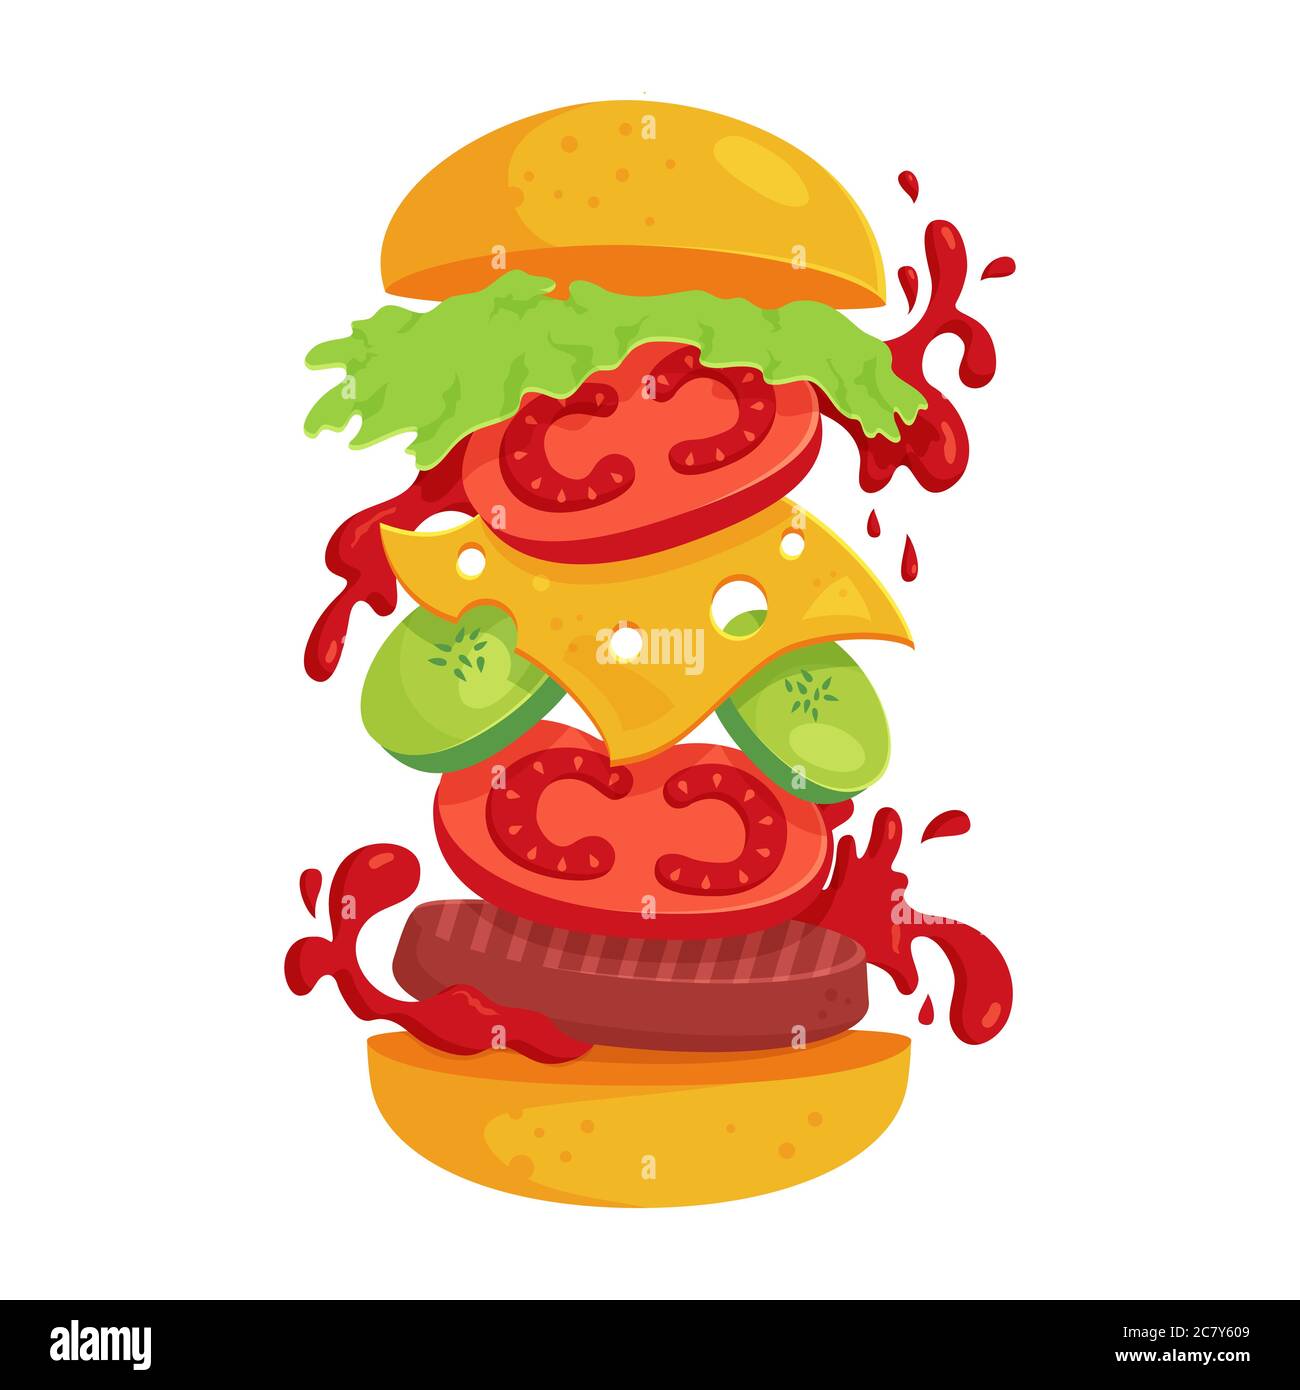 Hamburger - Vektorgrafik isoliert auf weißem Hintergrund. Fast Food Konzept mit fliegenden Zutaten. Saftiger und attraktiver Burger. Stock Vektor